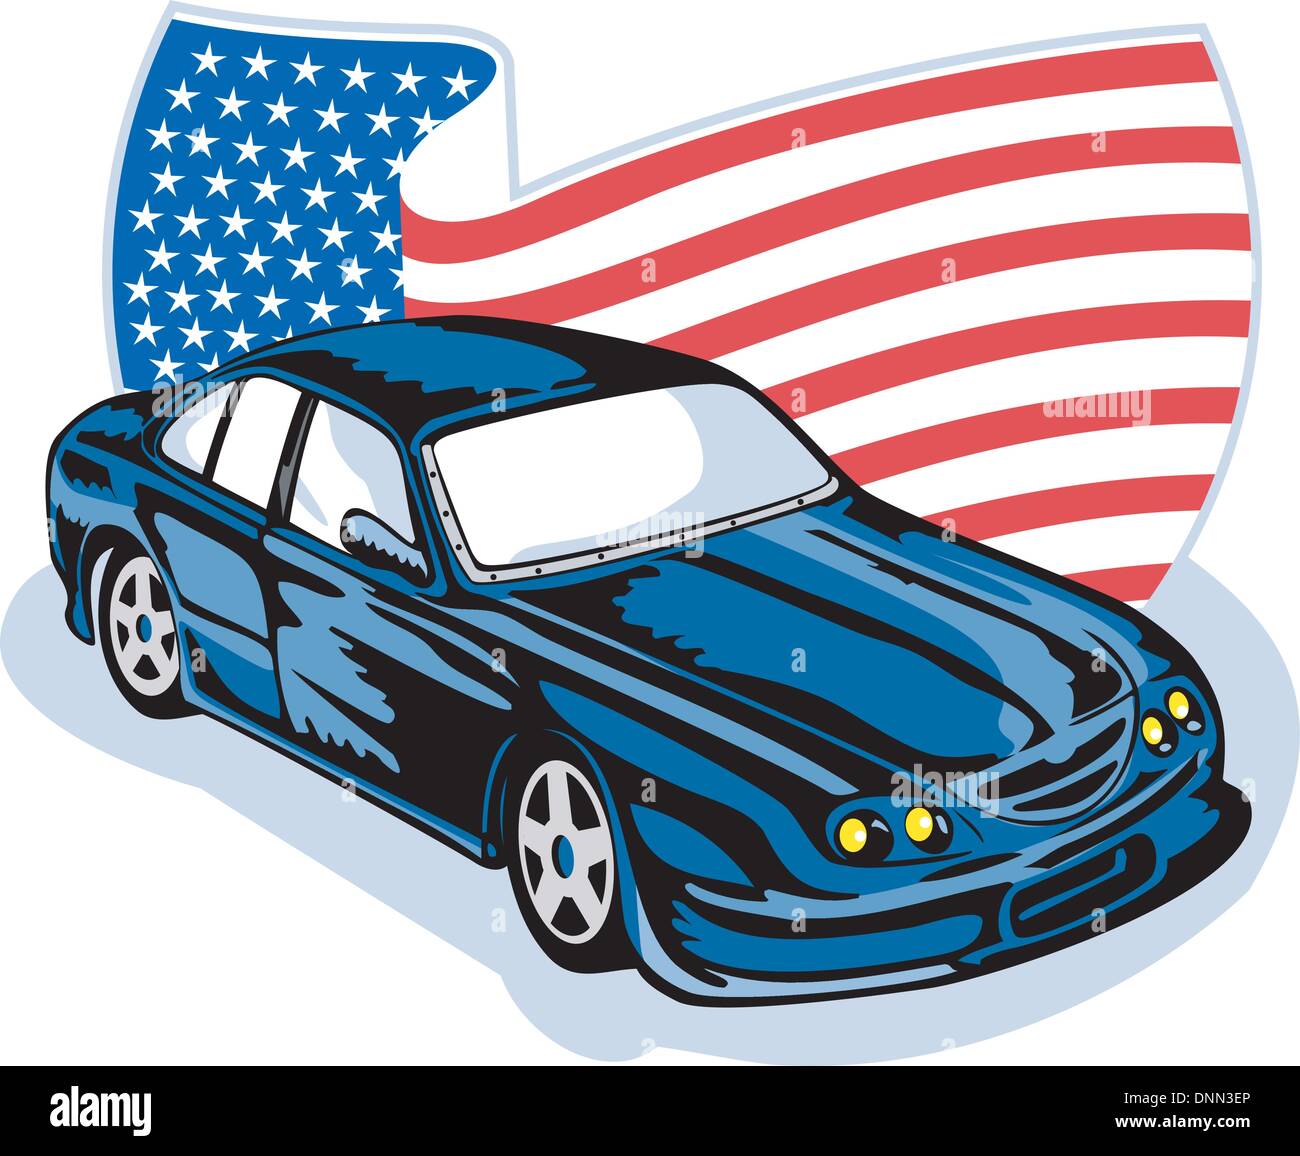 Design graphique illustration d'un américain Ford GT muscle car avec stars and stripes flag isolated on white Illustration de Vecteur